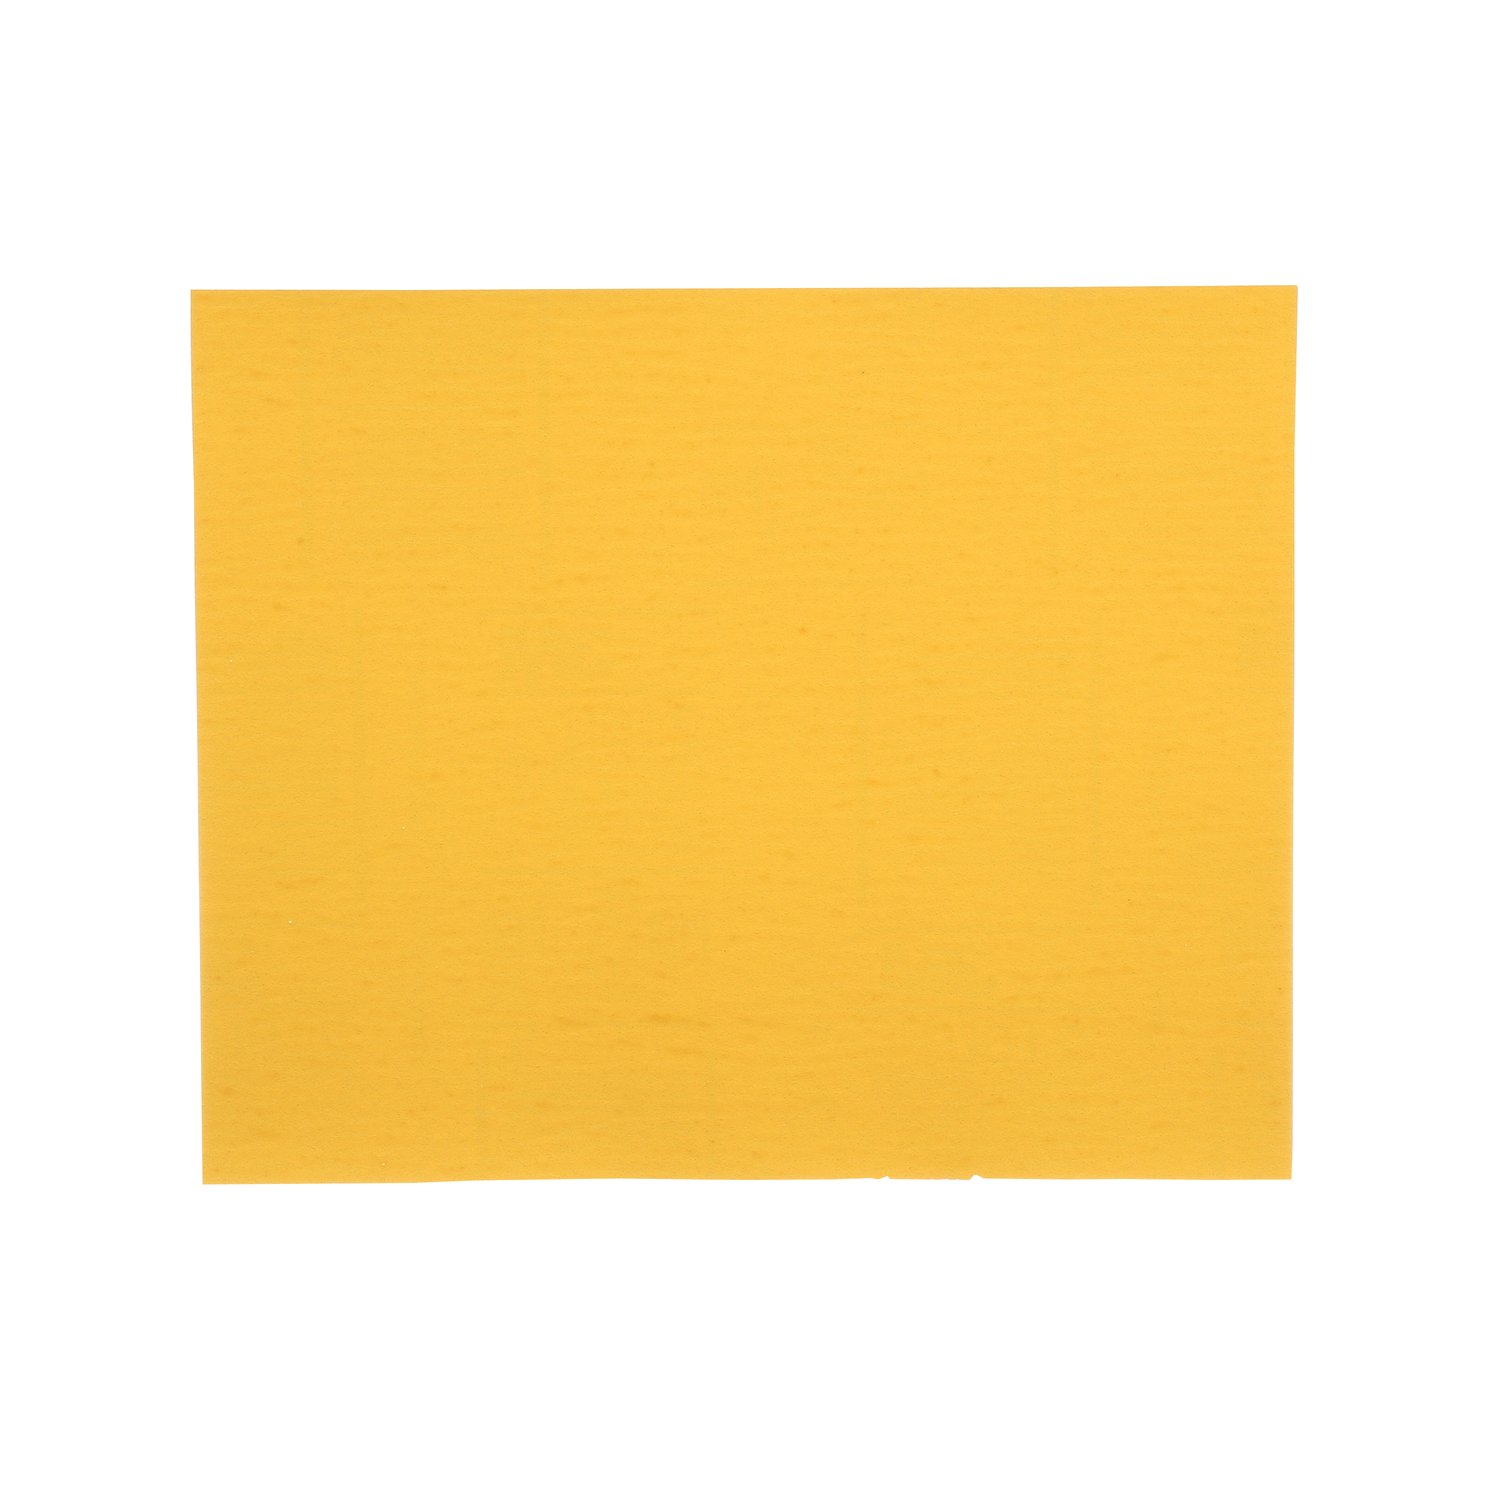 7000118285 - 3M Gold Abrasive Sheet, 02546, P150 grade, 9 in x 11 in, 50 sheets per
pack, 5 packs per case